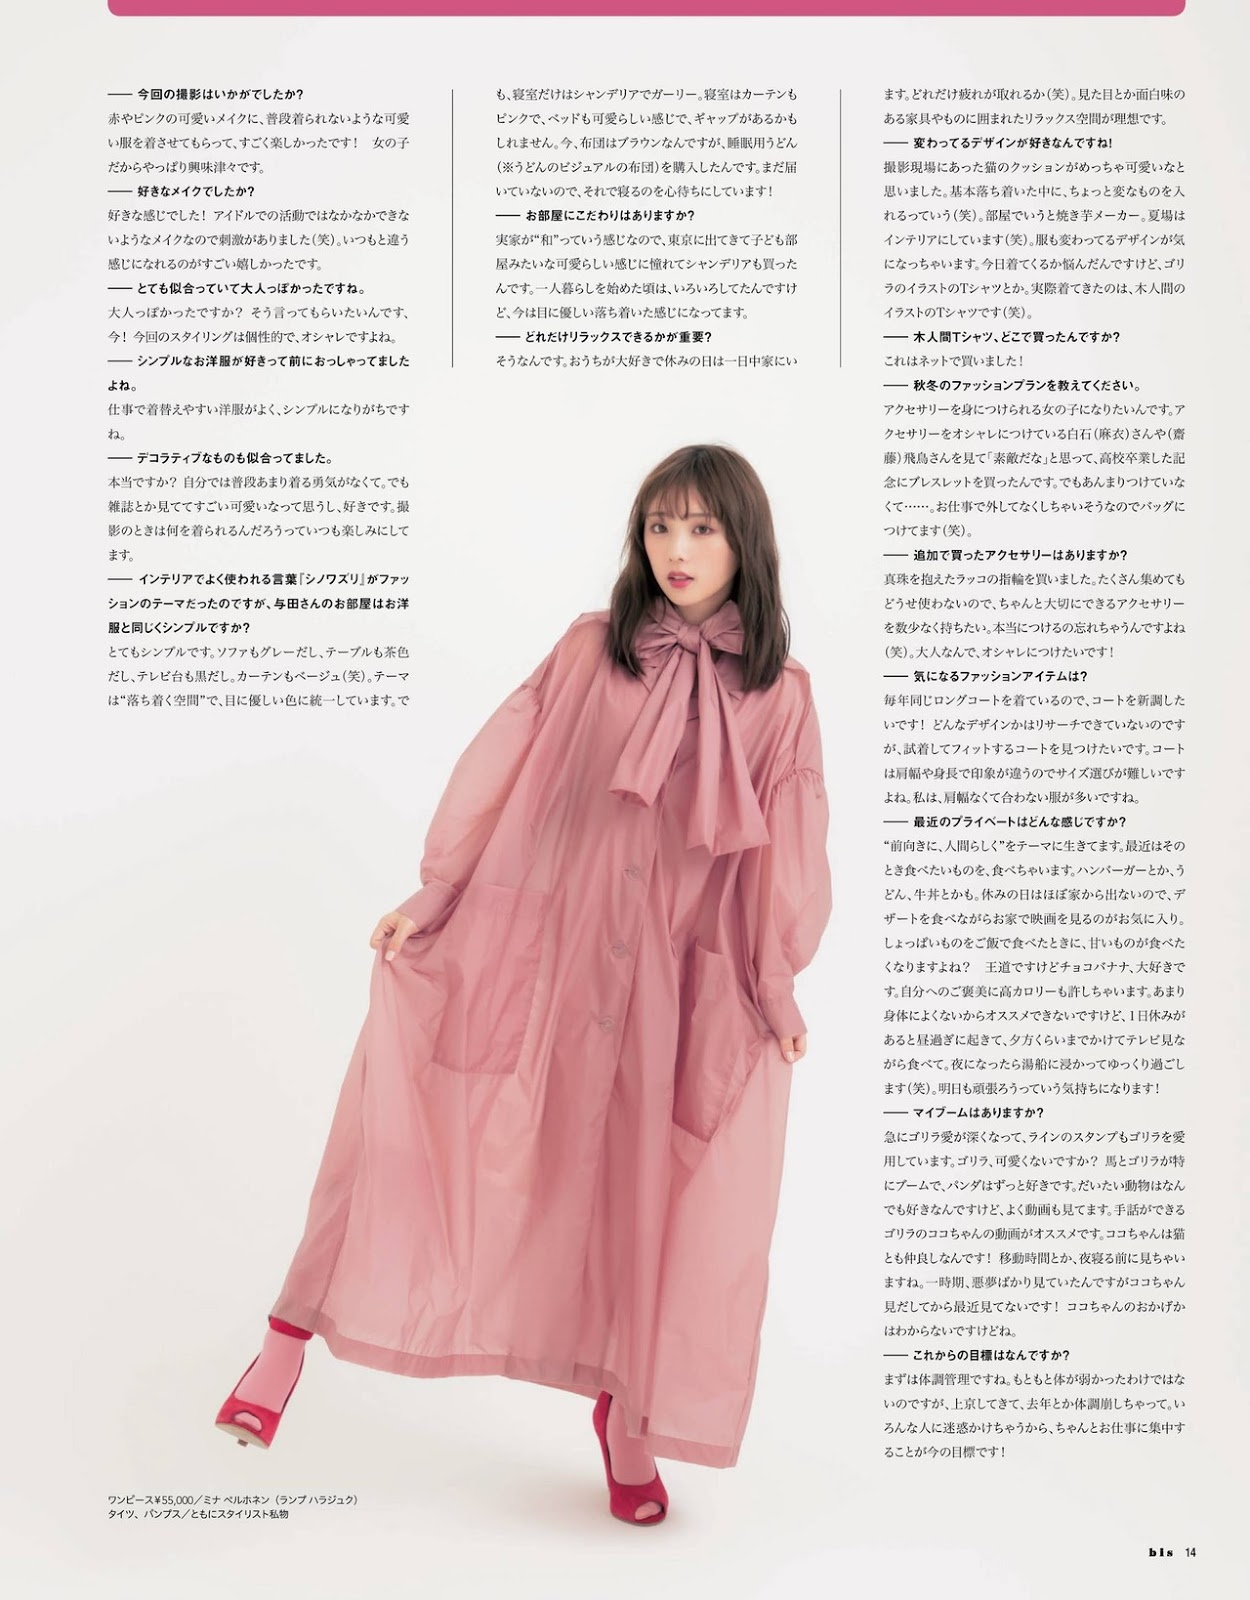 Yuki Yoda 与田祐希, BIS Magazine 2019.11